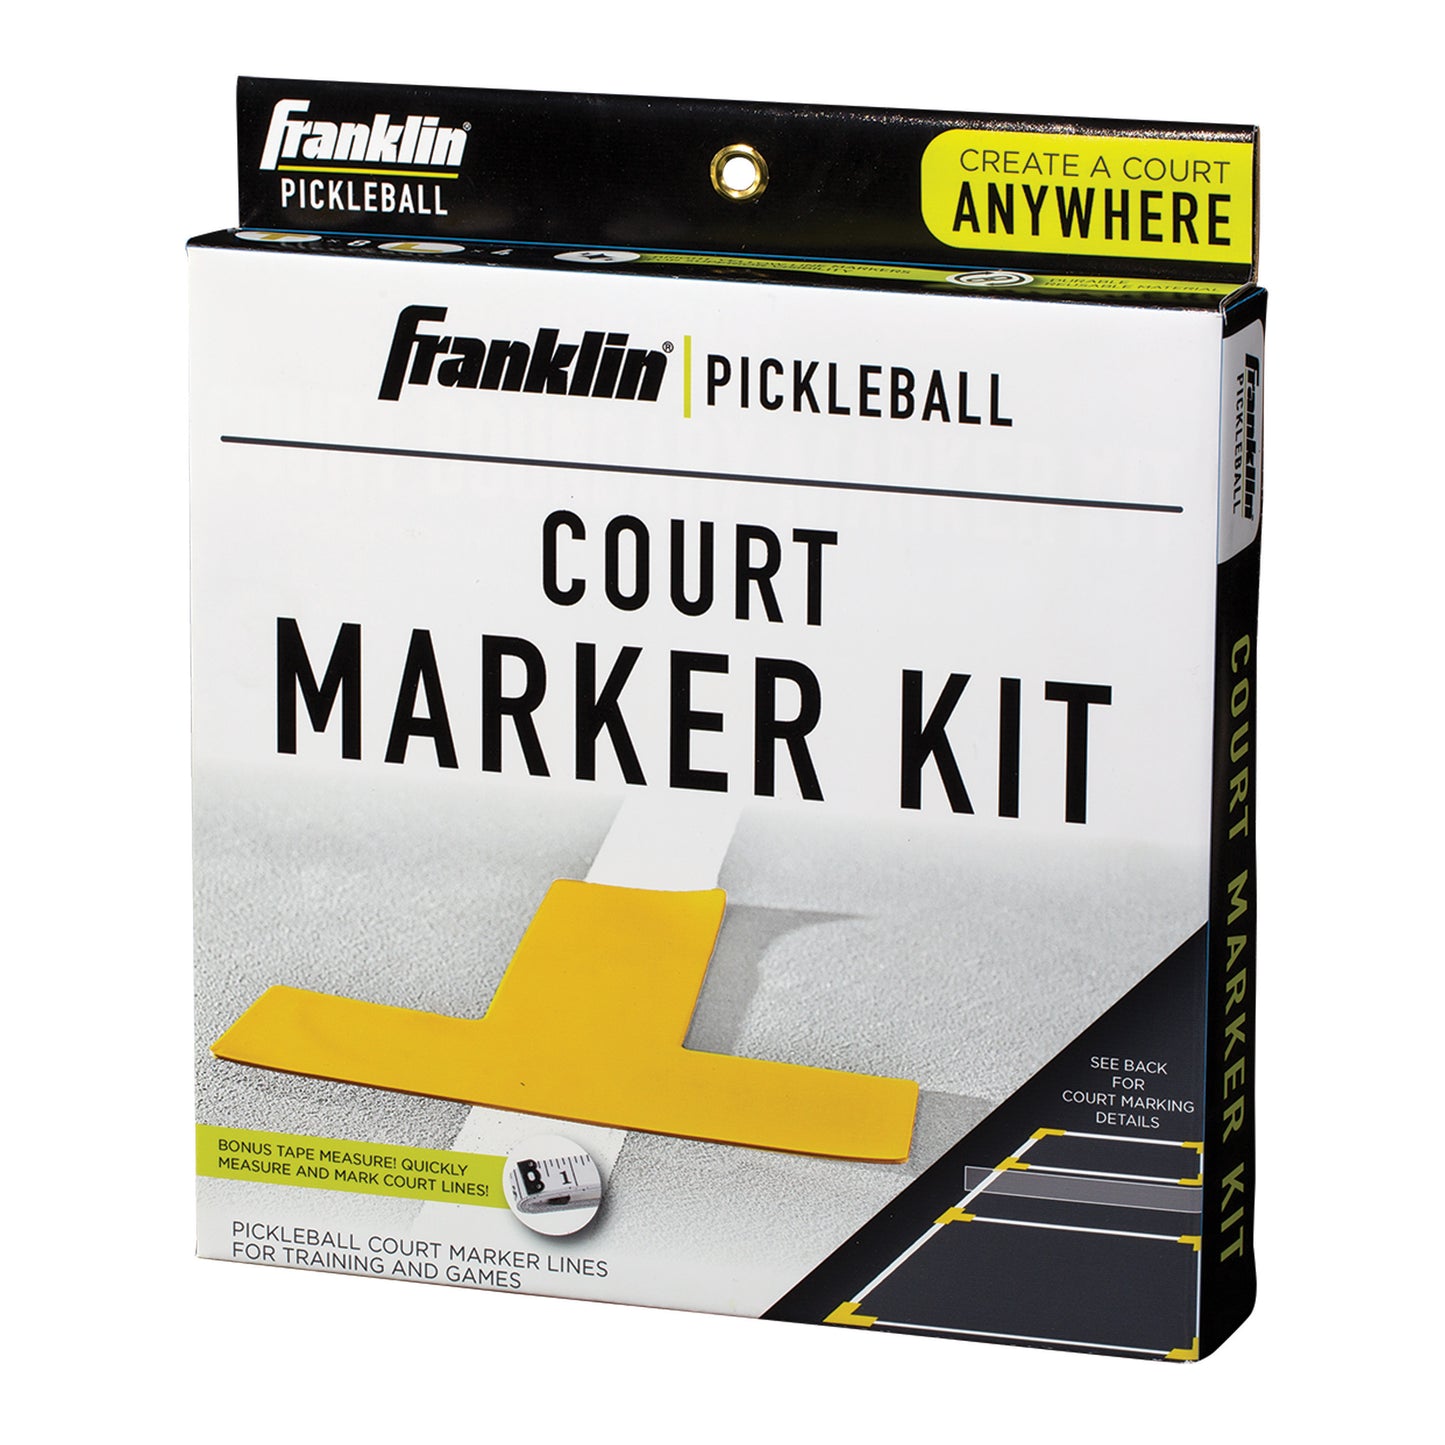 Pickleball Court Marker Kit